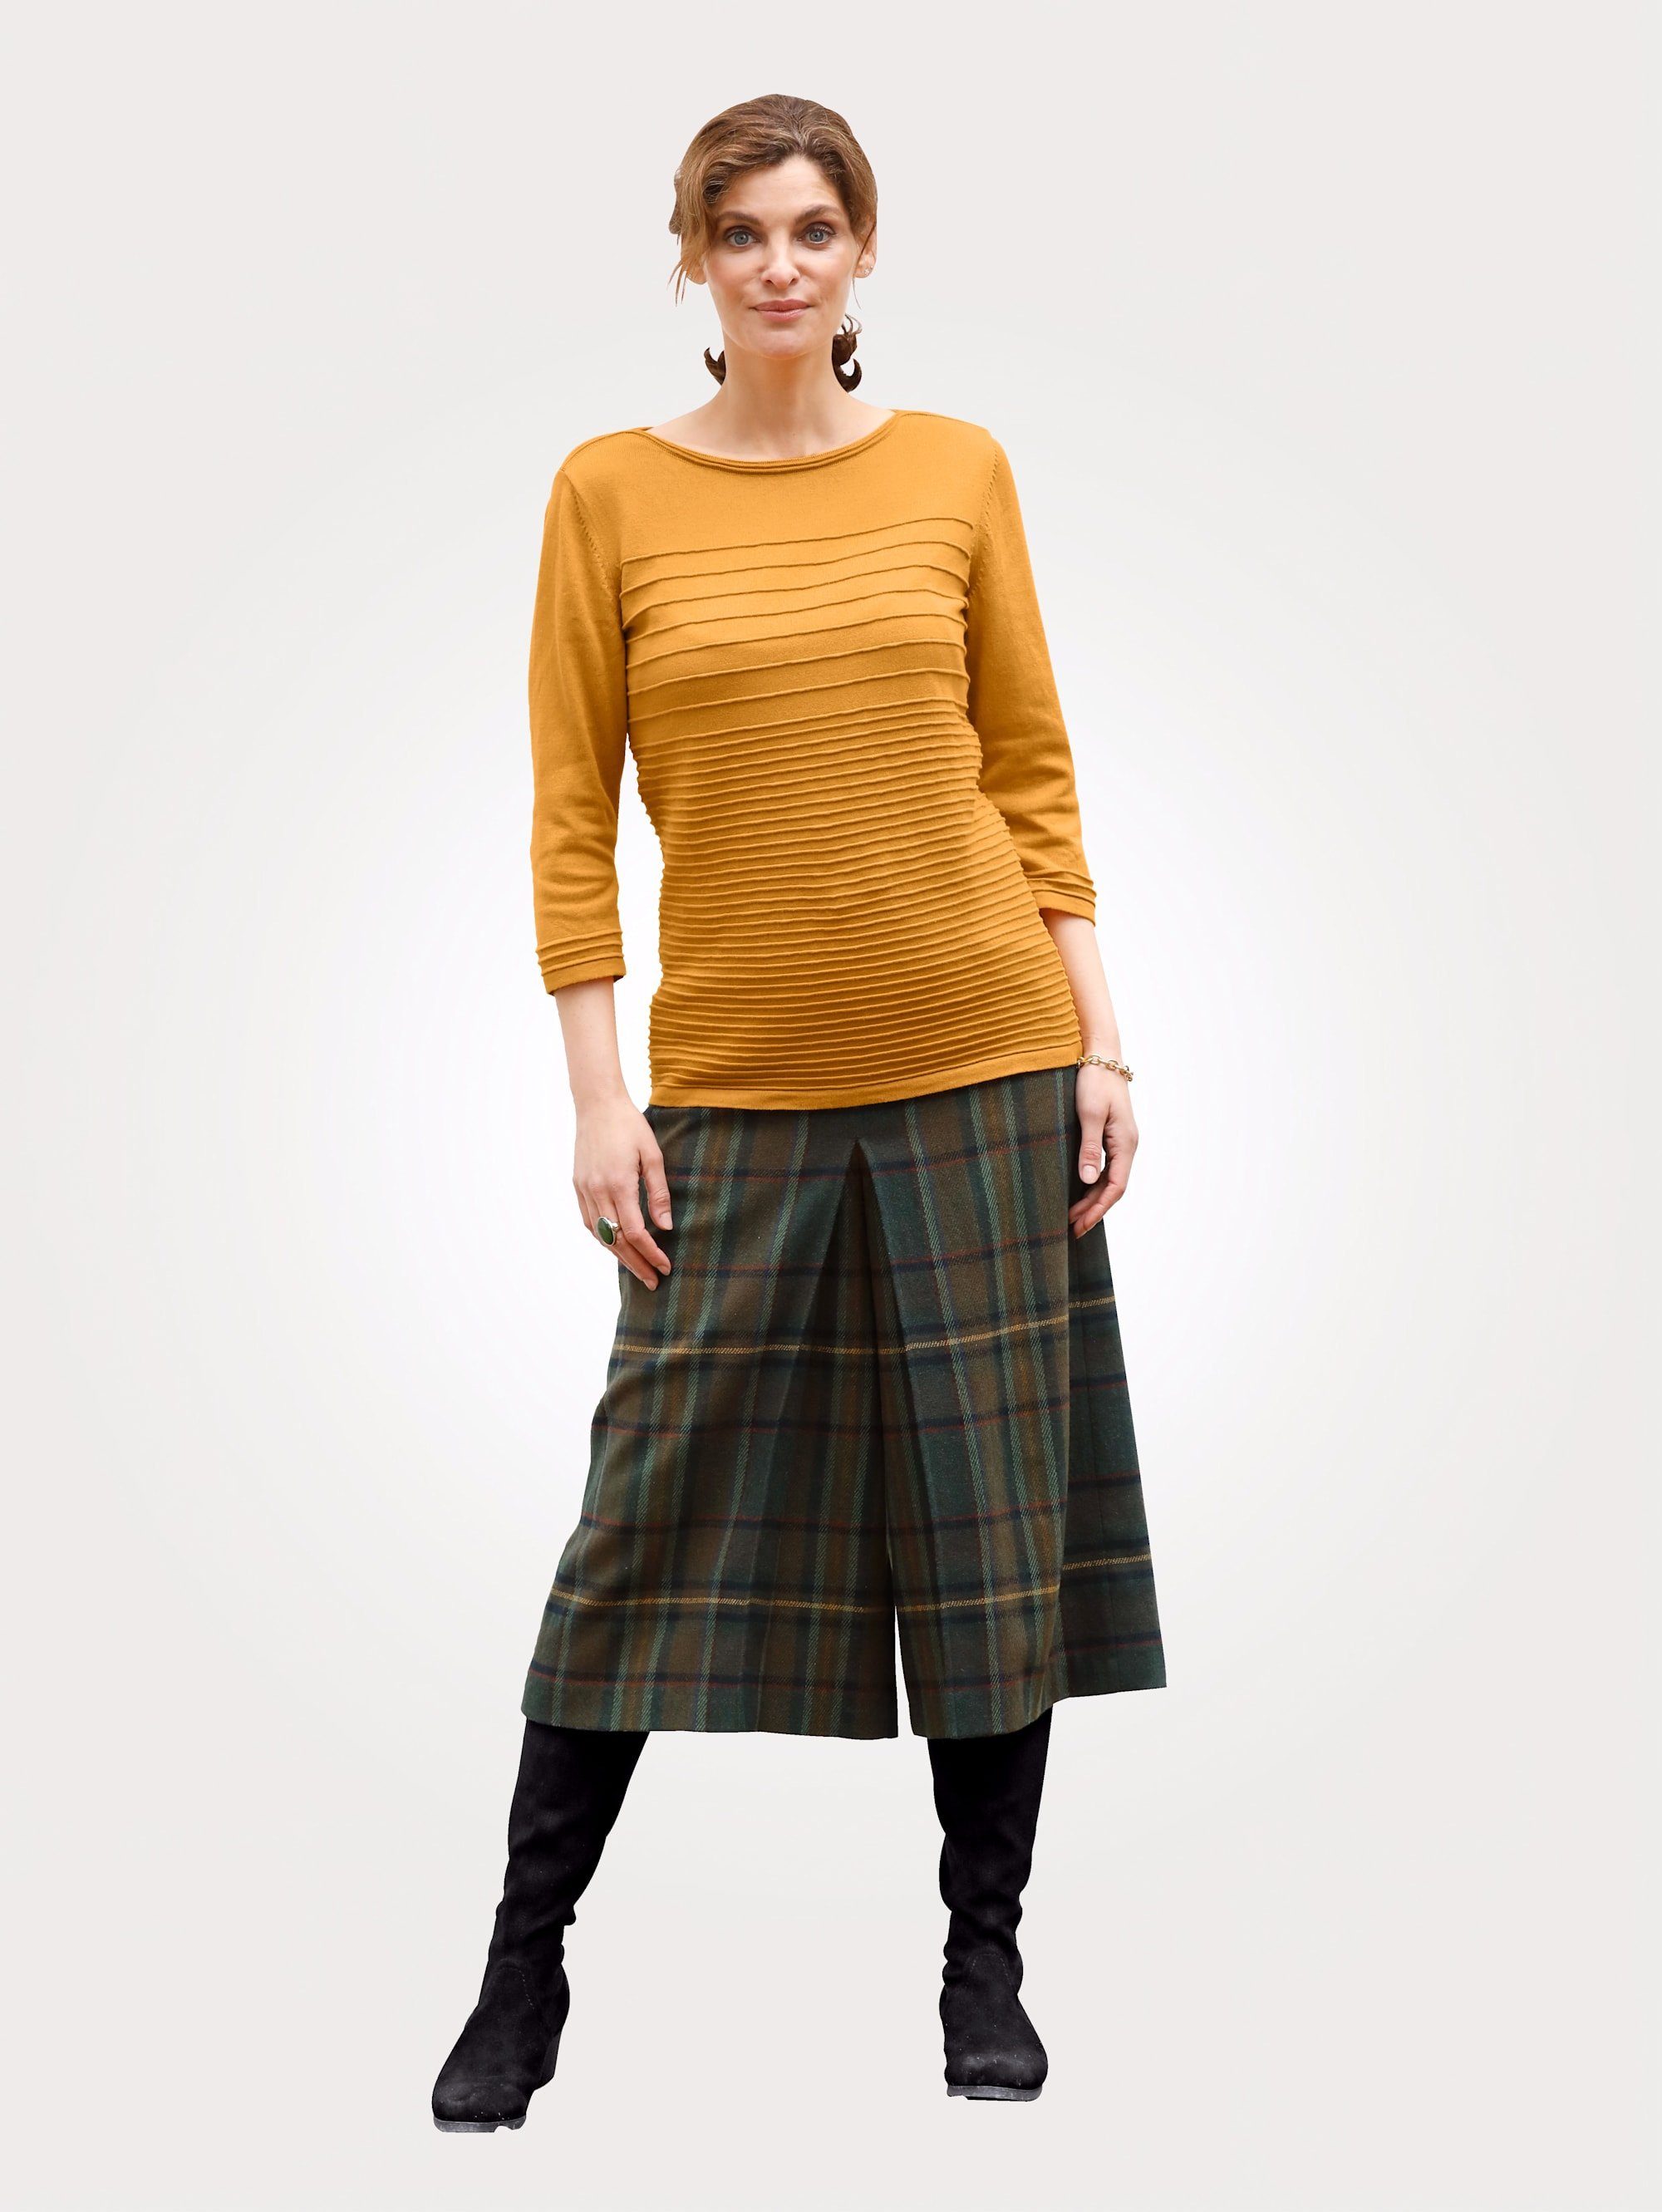 Mona Hosenrock mit klassischem Karo-Muster kaufen | OTTO